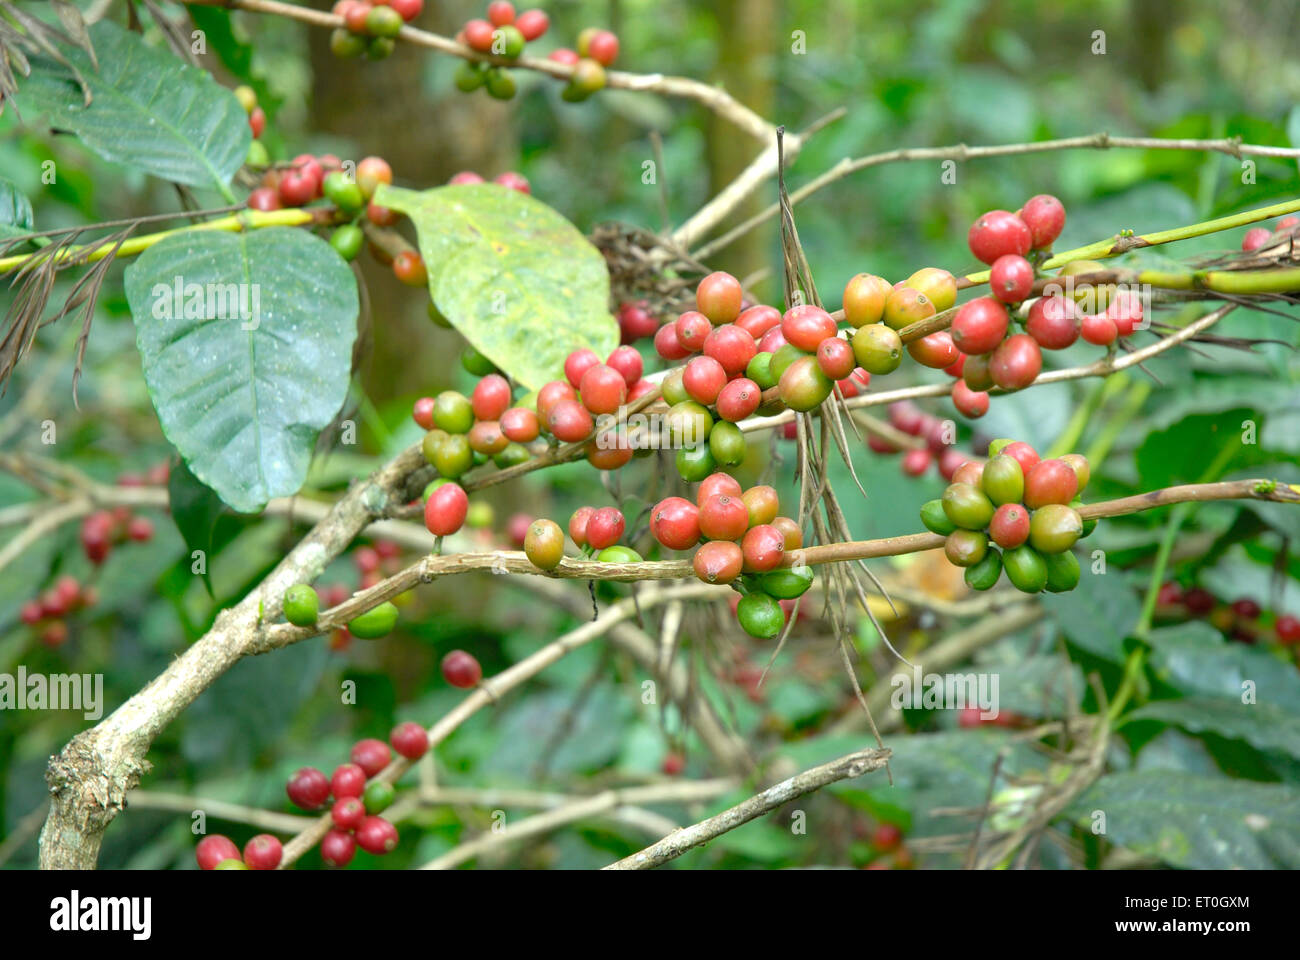 Kaffee Kirsche Baum, Kaffee Kirsche Baum, Kaffee Kirsche Baum, Kaffee Beerenbaum, Kaffee Beeren Baum, Madykeri, Madykery, Coorg, Karnataka, Indien, Asien Stockfoto